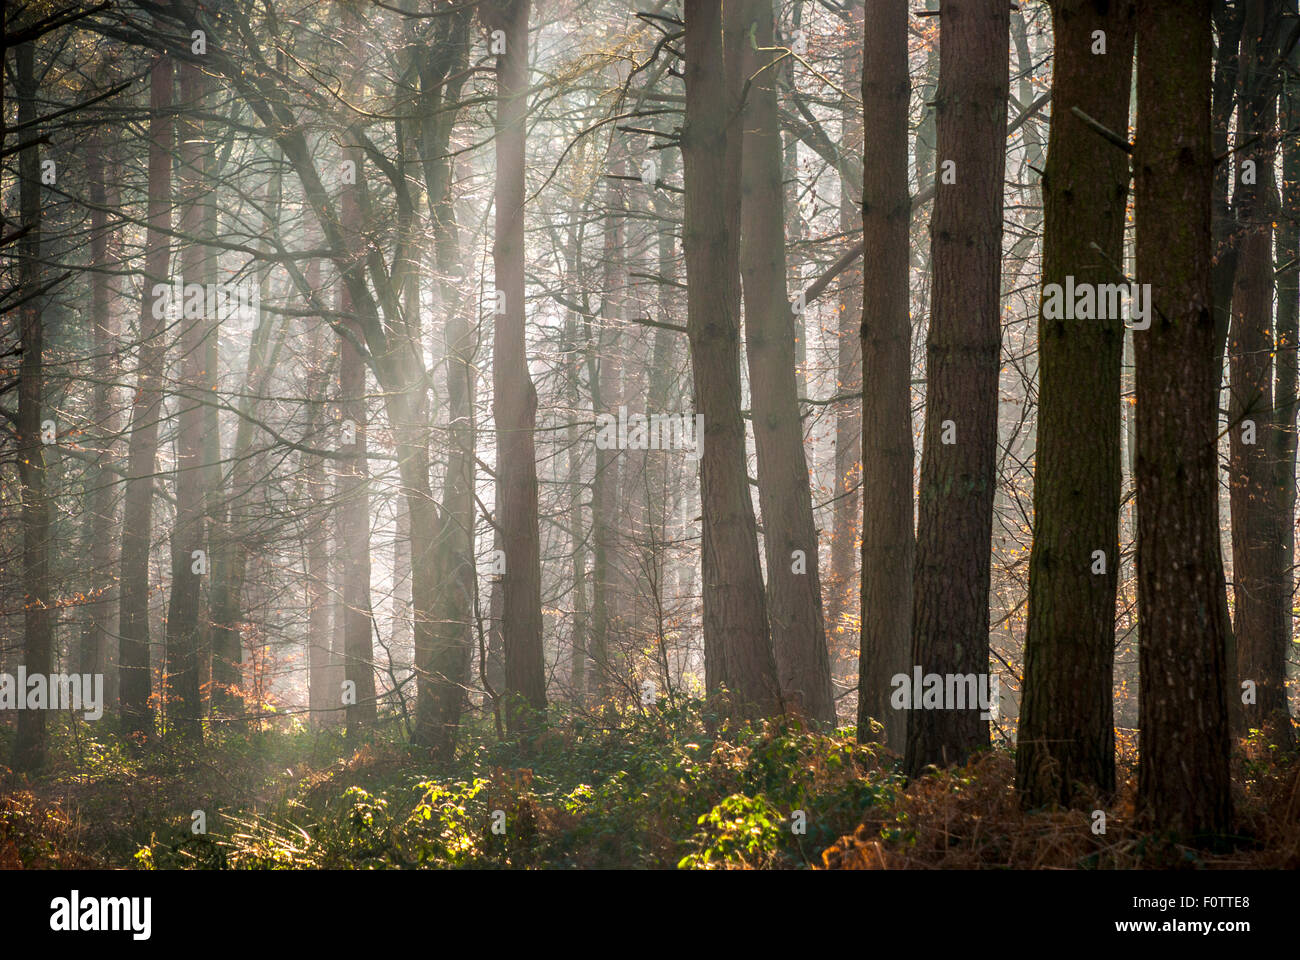 Royal Foresta di Dean, Gloucestershire, England, Regno Unito Foto Stock